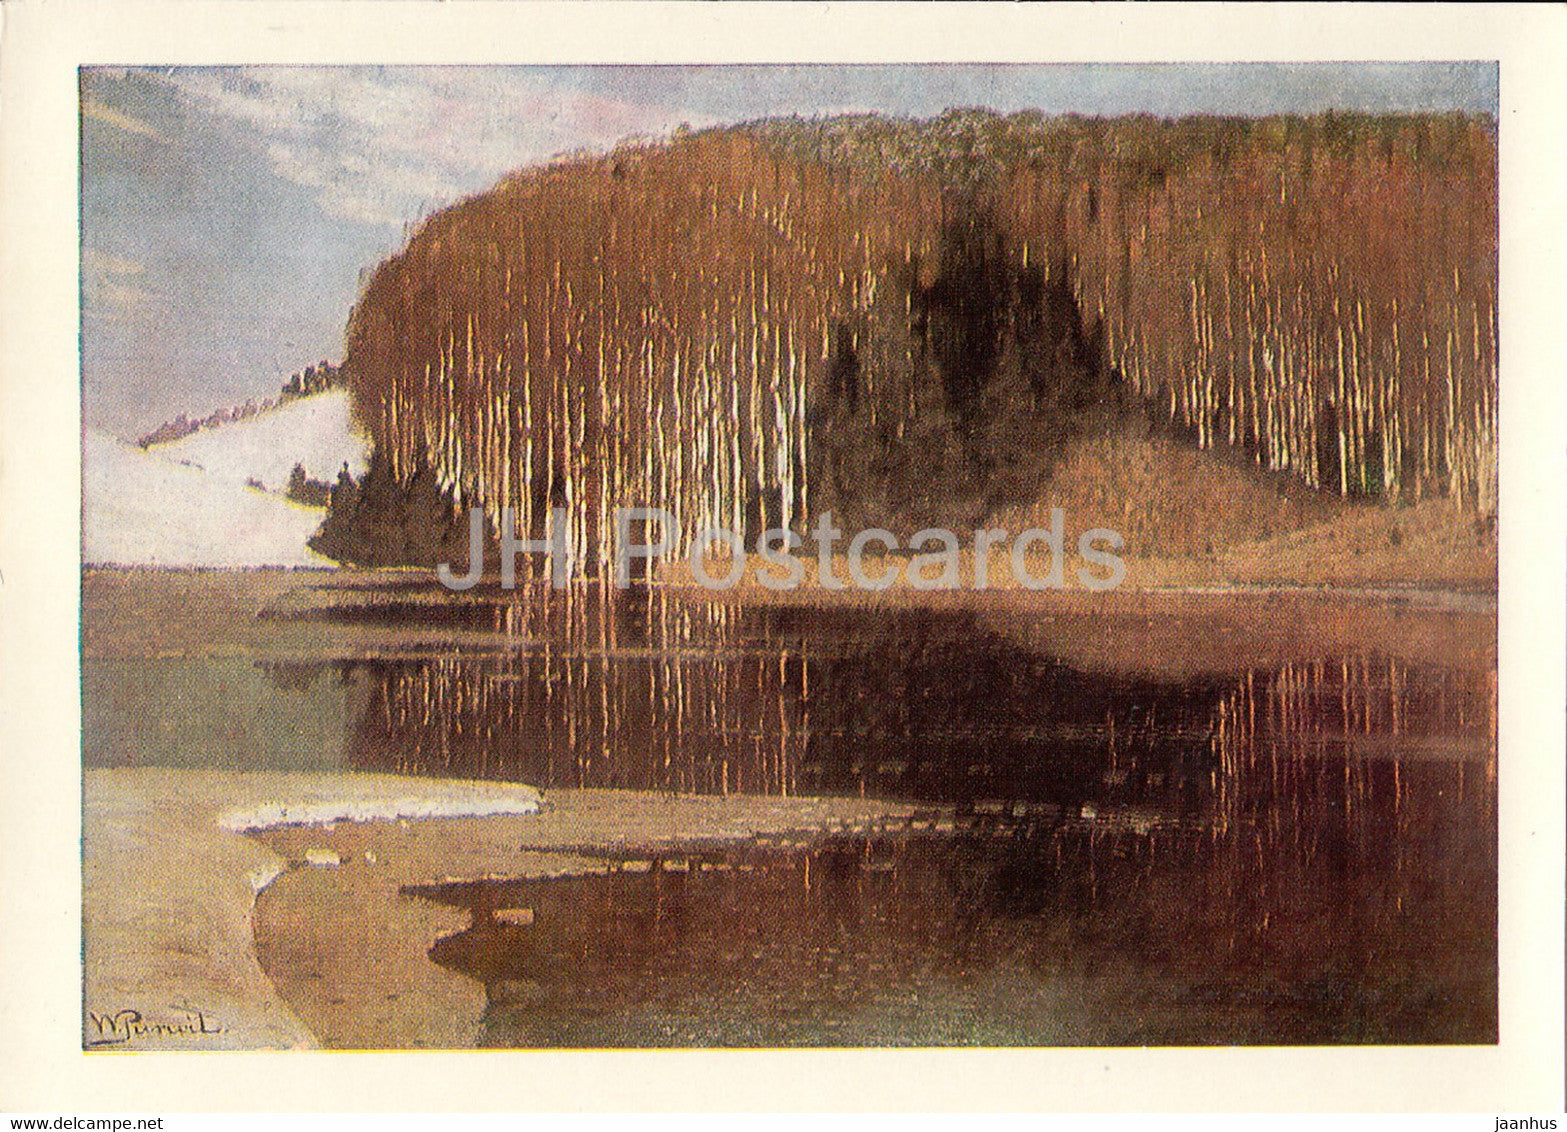 painting by Vilhelms Purvitis - Vernal Floods - Latvian art - Latvia USSR - unused - JH Postcards